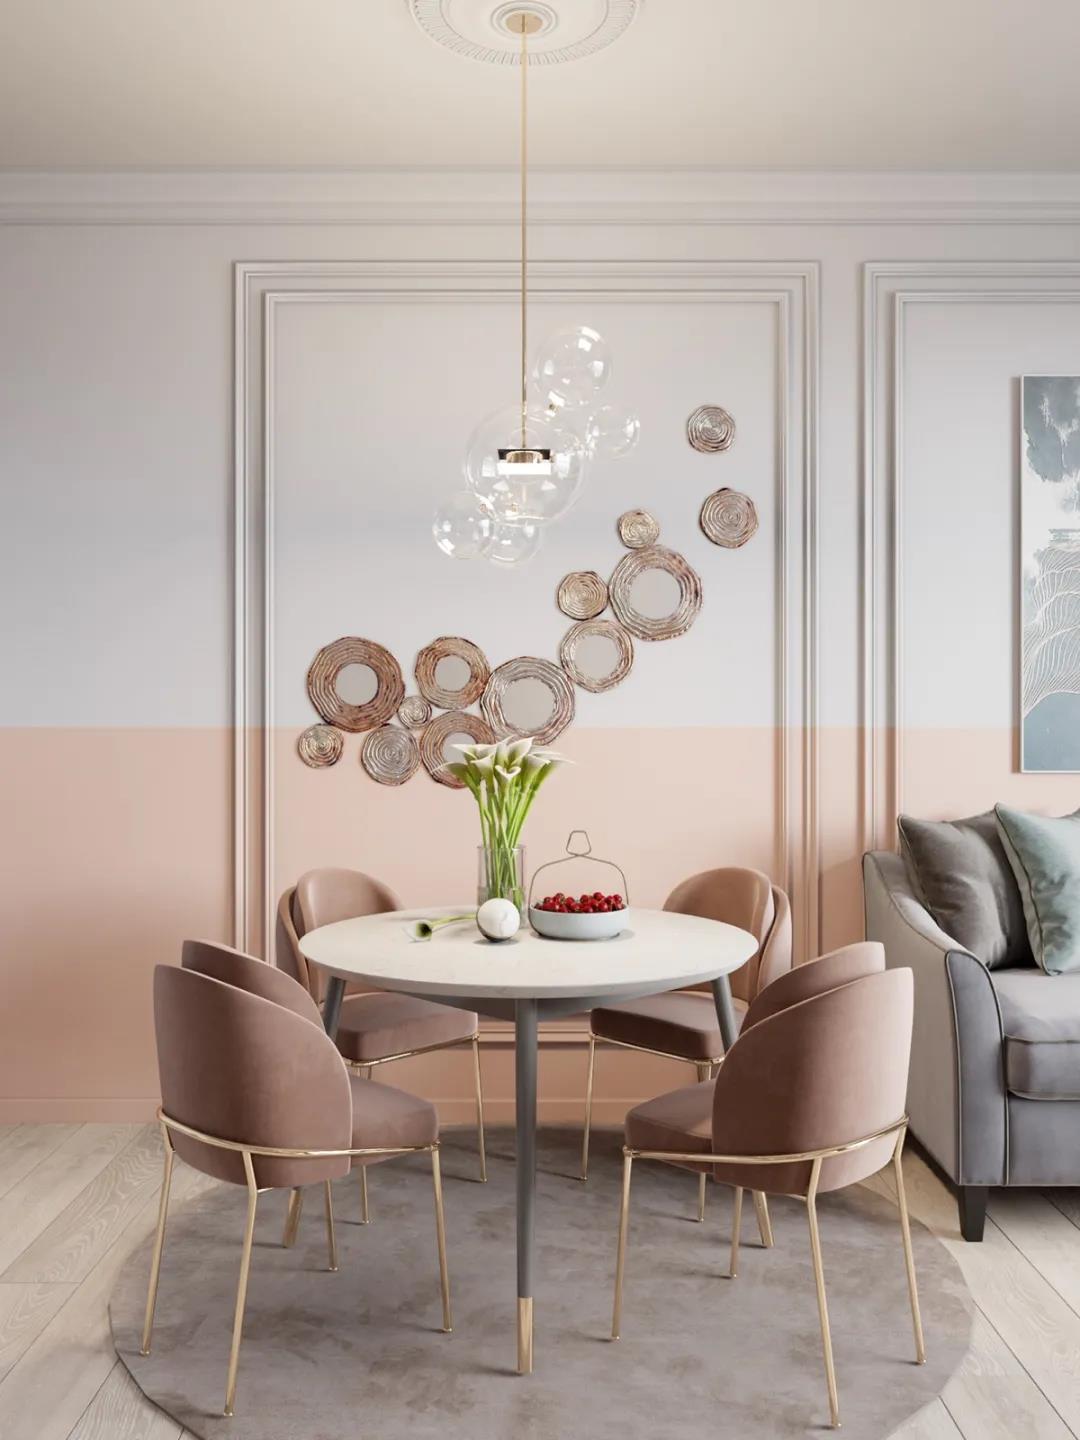 圆形餐桌与粉色颜色的座椅，集功能与美貌于一体，在灯光的映衬下充满浪漫。